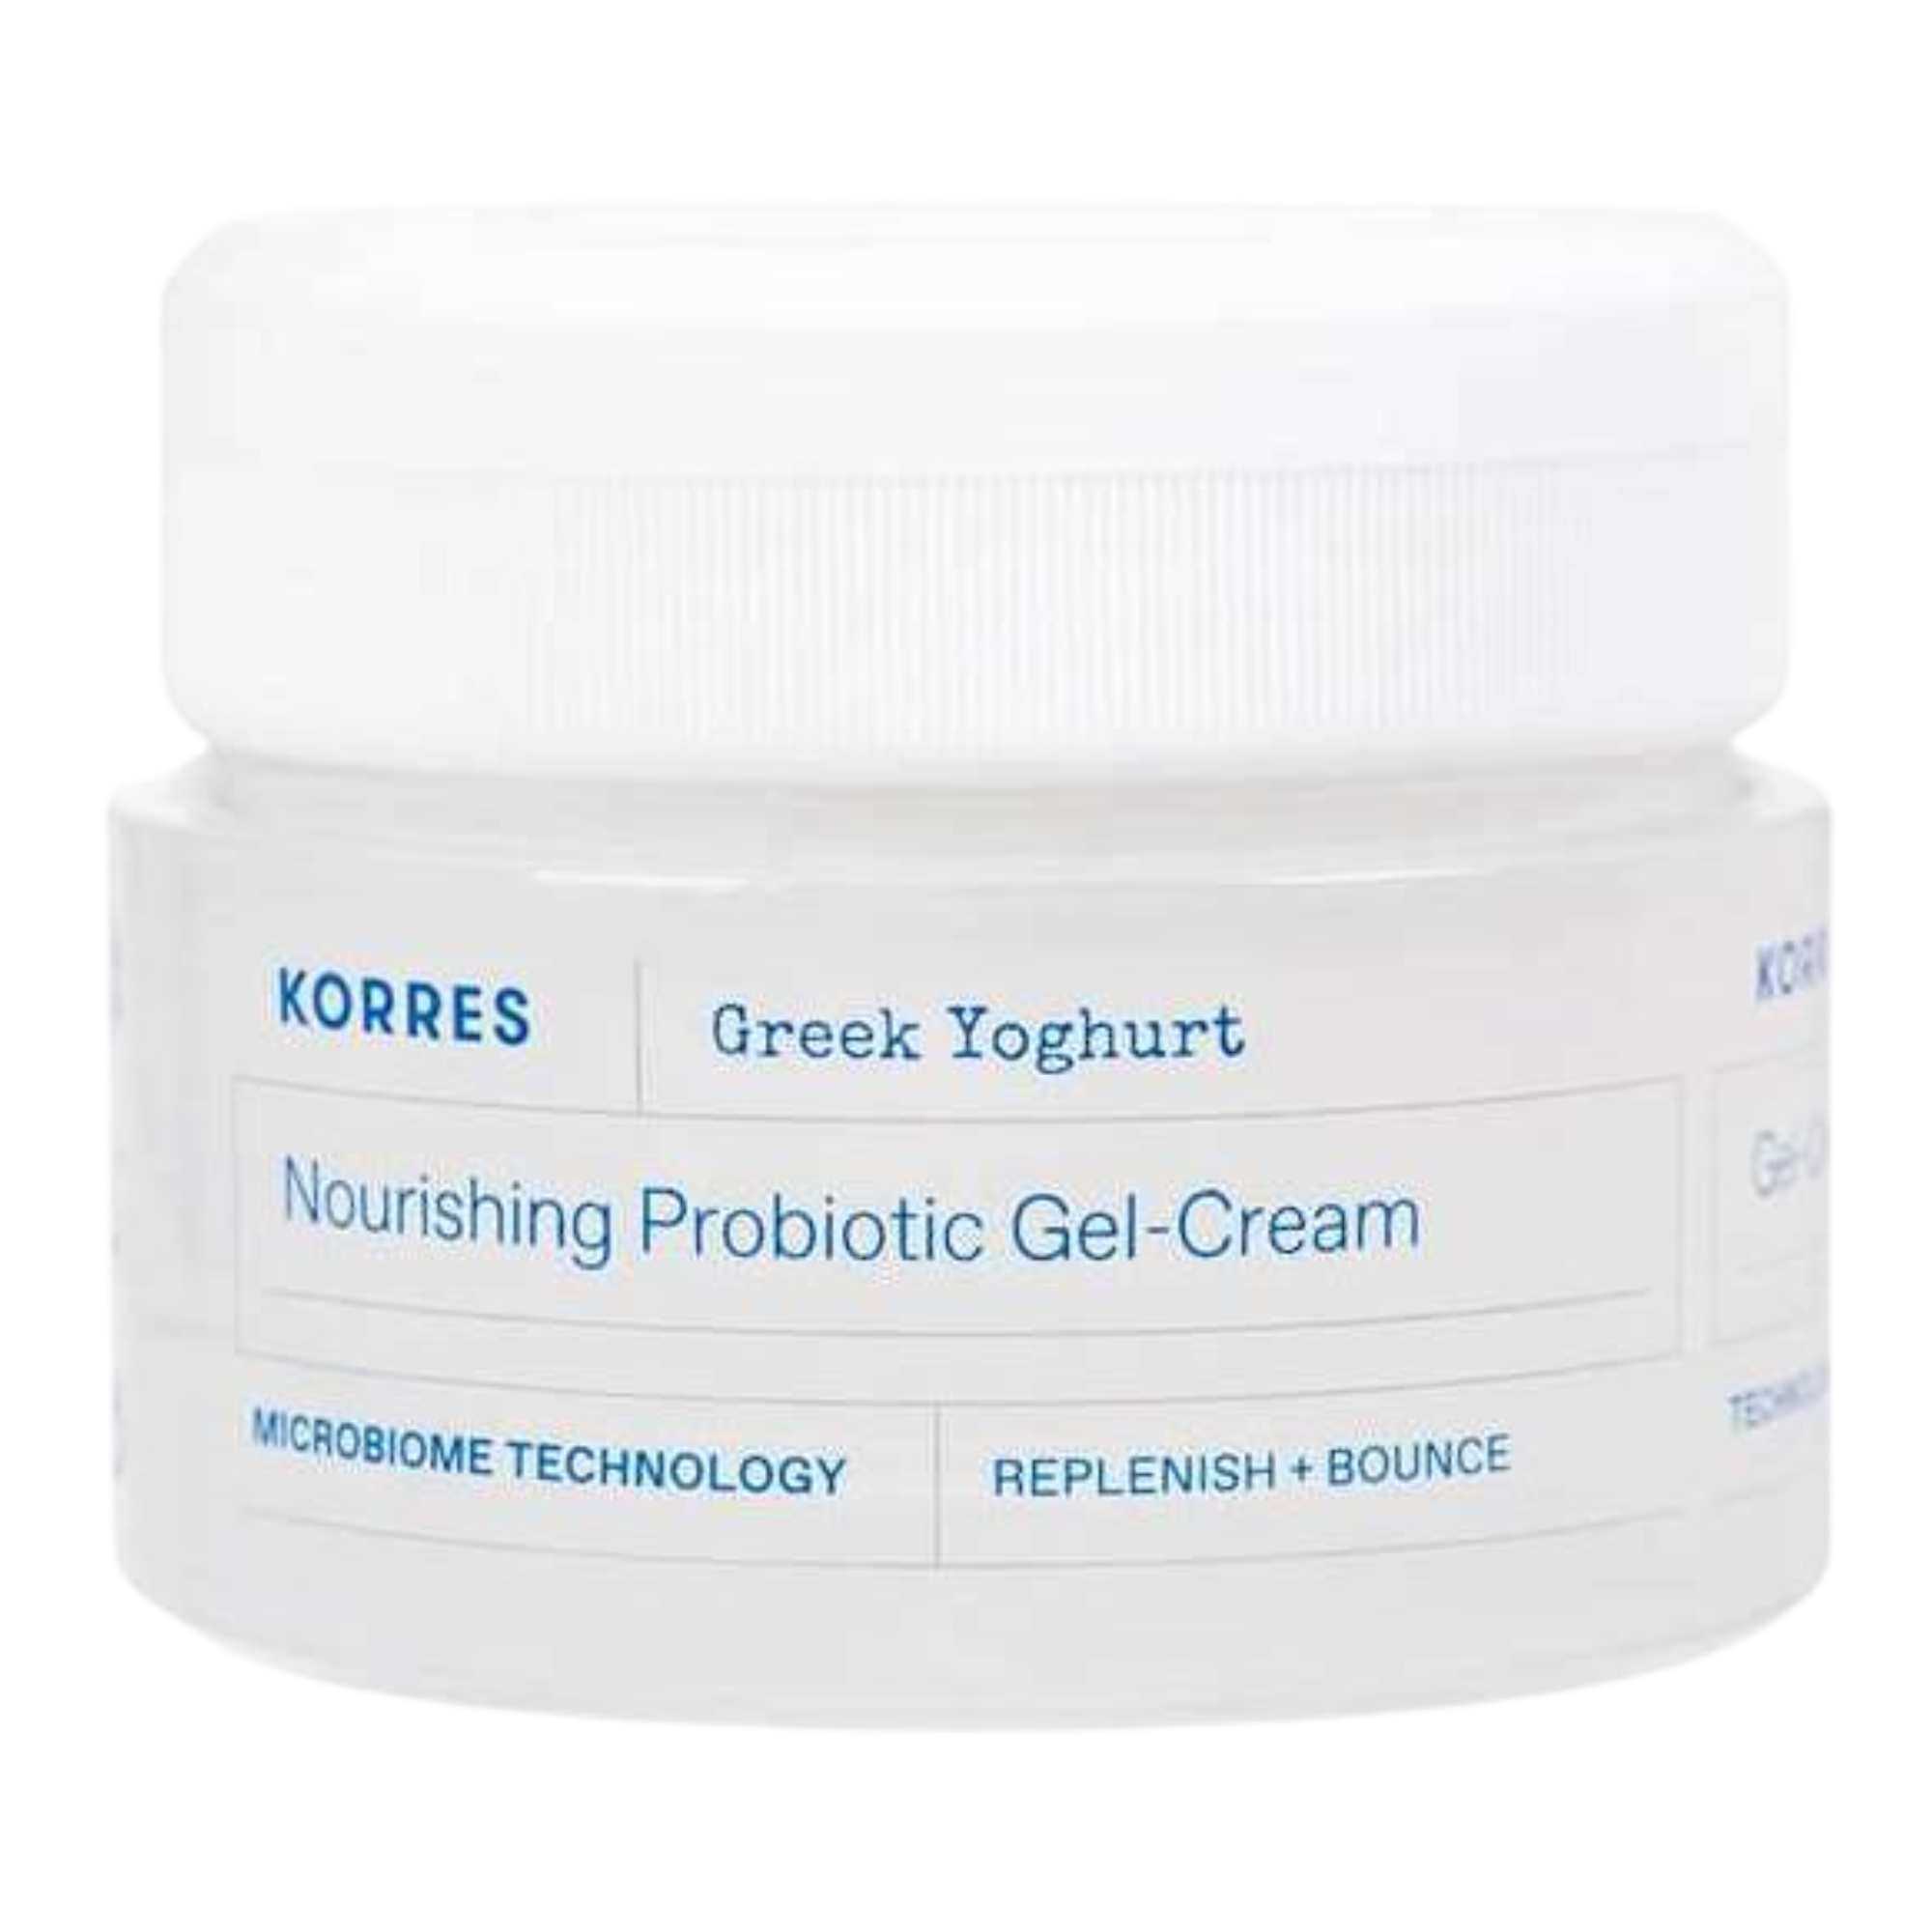 Korres Greek Yoghurt питательный крем-гель для нормальной и комбинированной кожи, 40 мл крем для сухой кожи korres greek yoghurt nourishing probiotic intense cream 40 мл